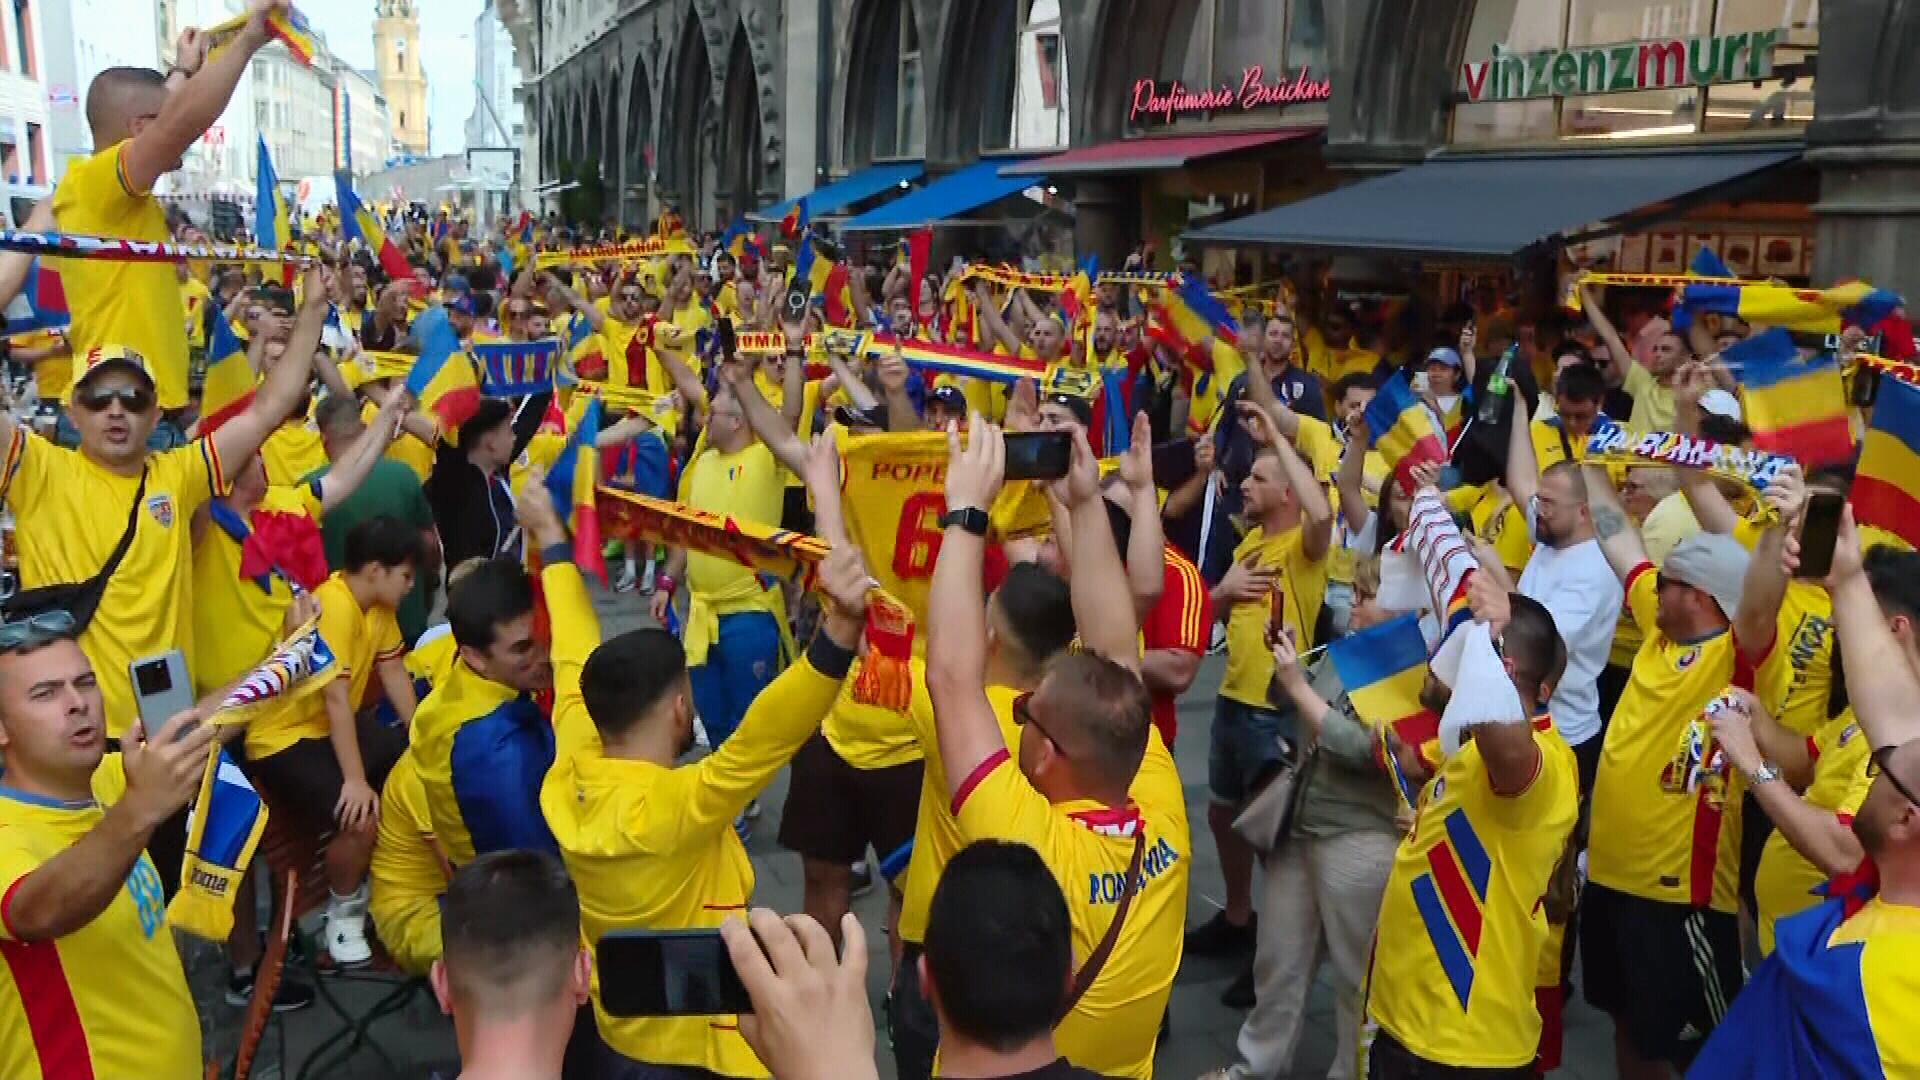 Munchen, ”capitala” României! Fanii au invadat străzile orașului bavarez și sunt gata de show pe Fussball Arena